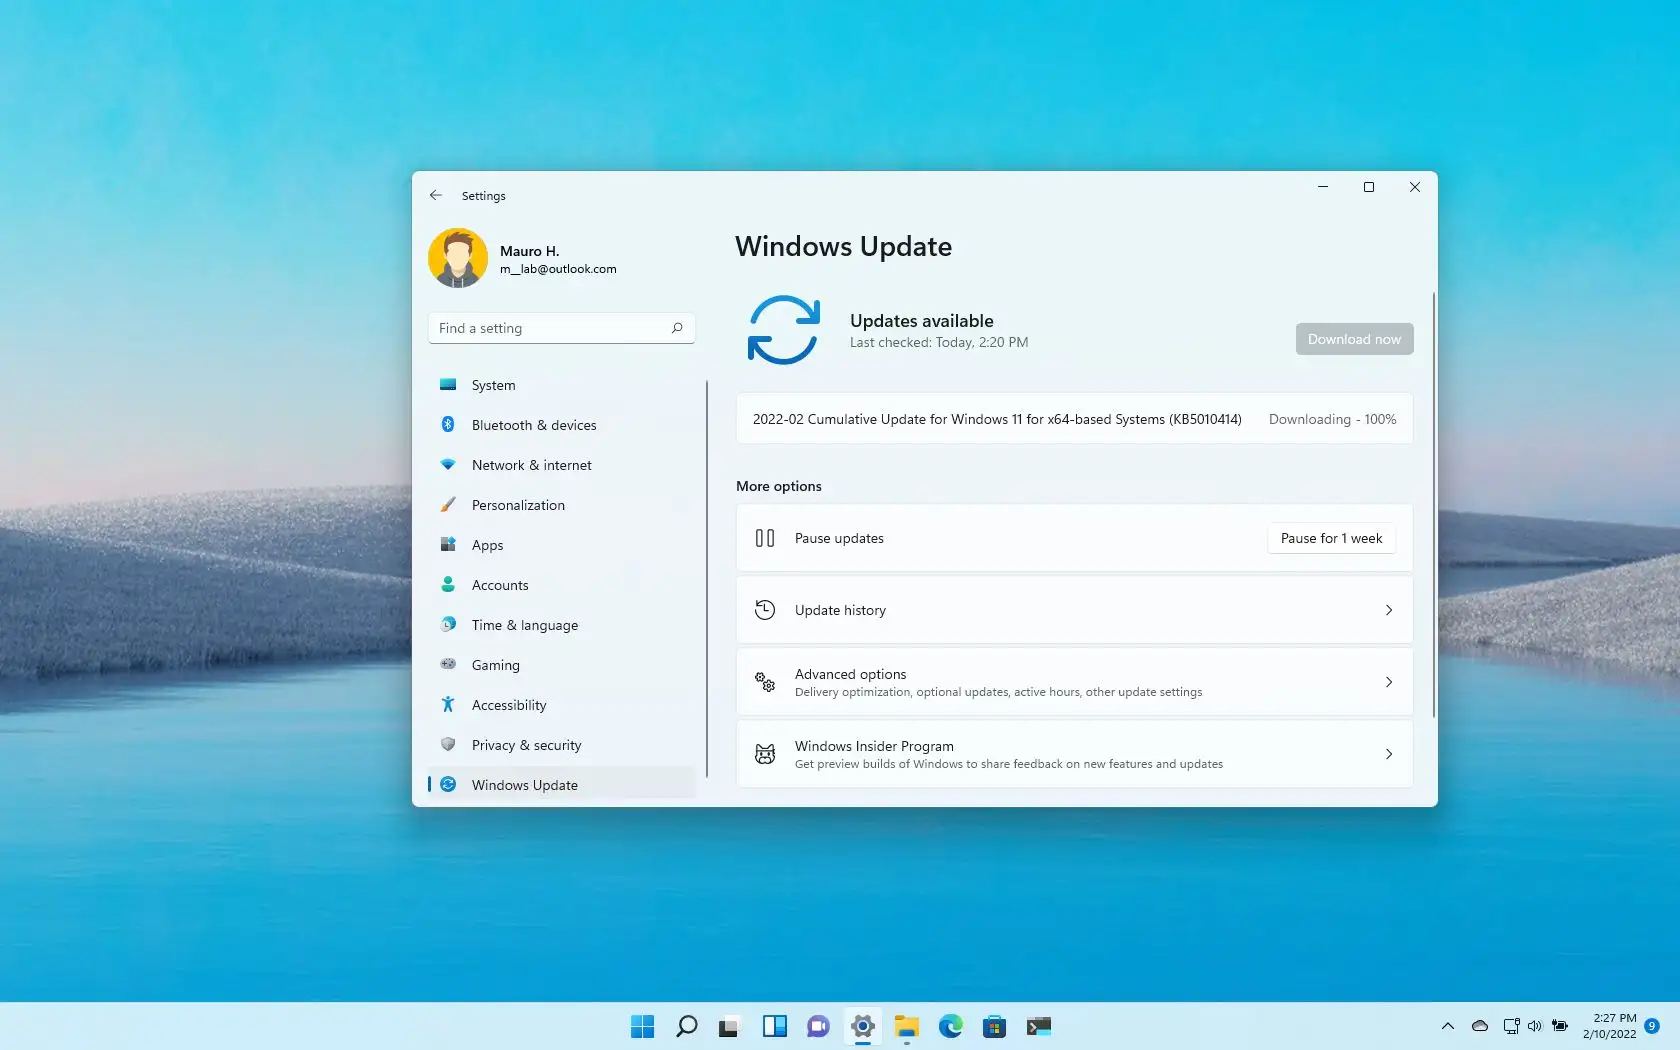 Windows 11 build 22000.526 (KB5010414) sisältää uusia ominaisuuksia